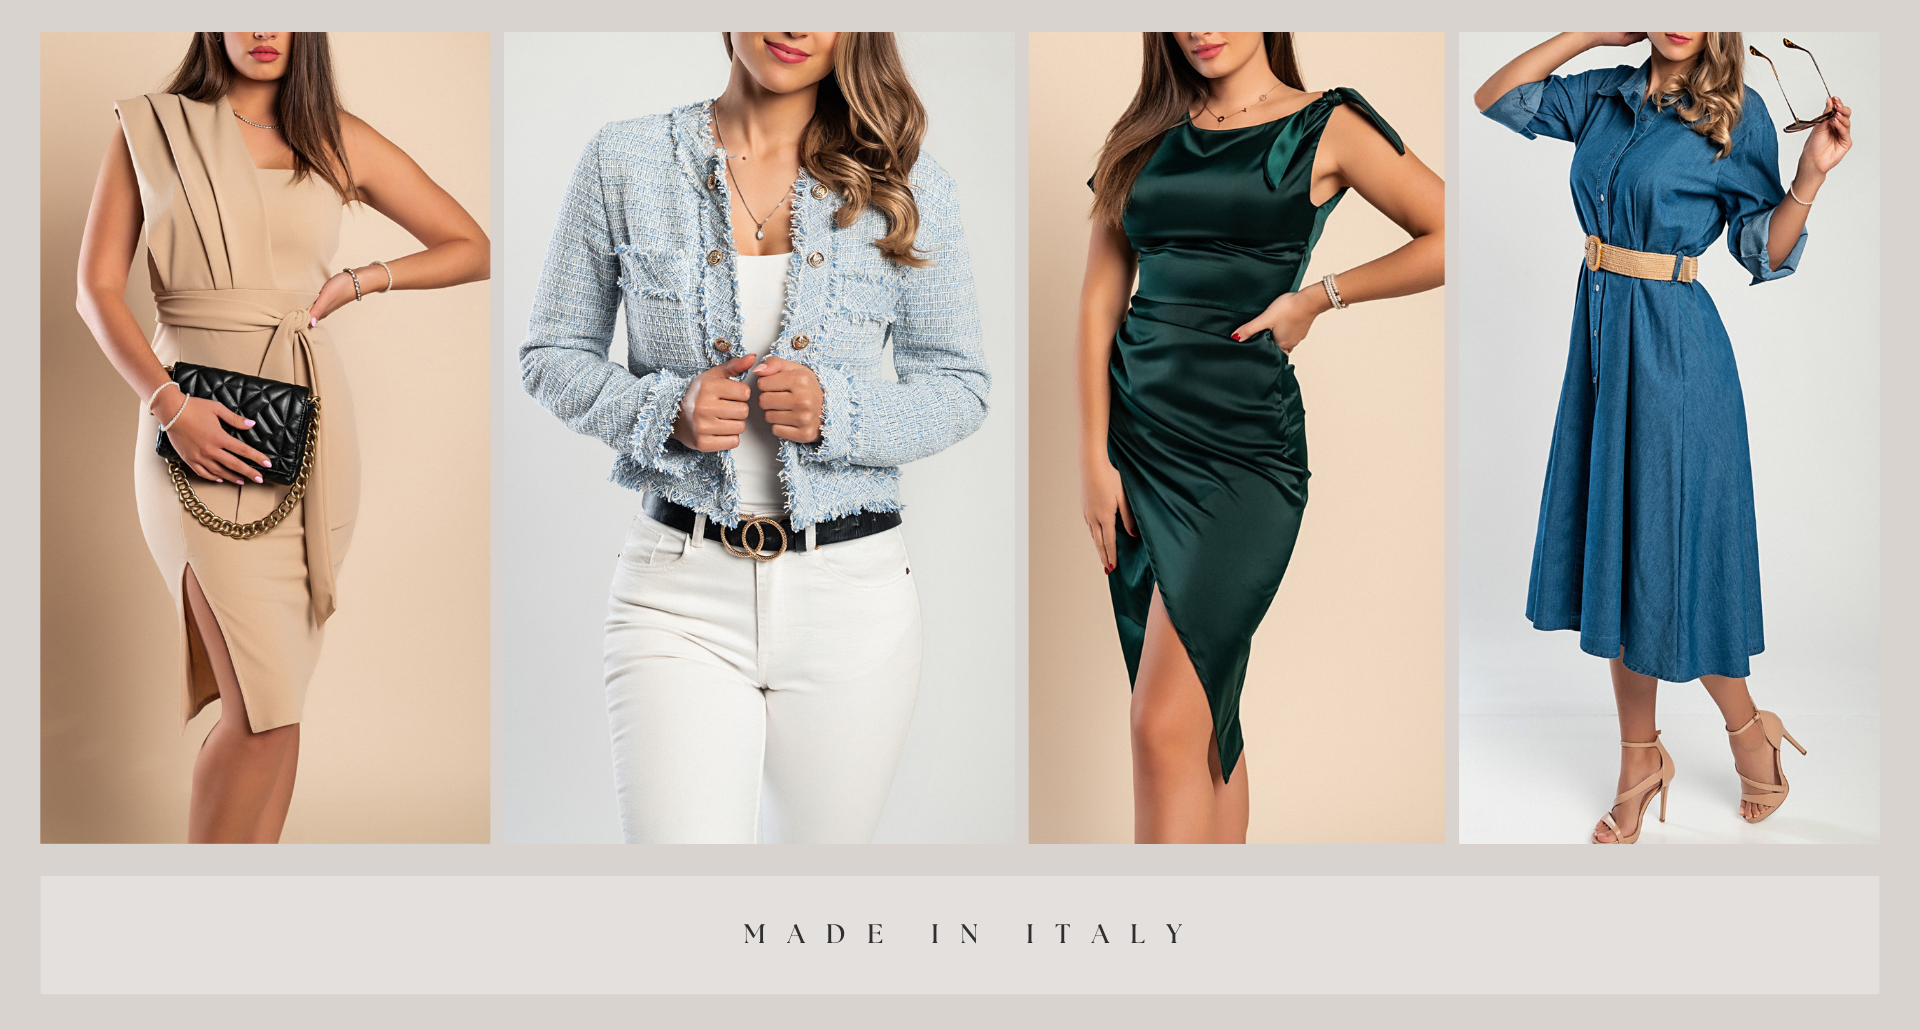  Vestidos y accesorios Made in Italy: Ropa, Zapatos y